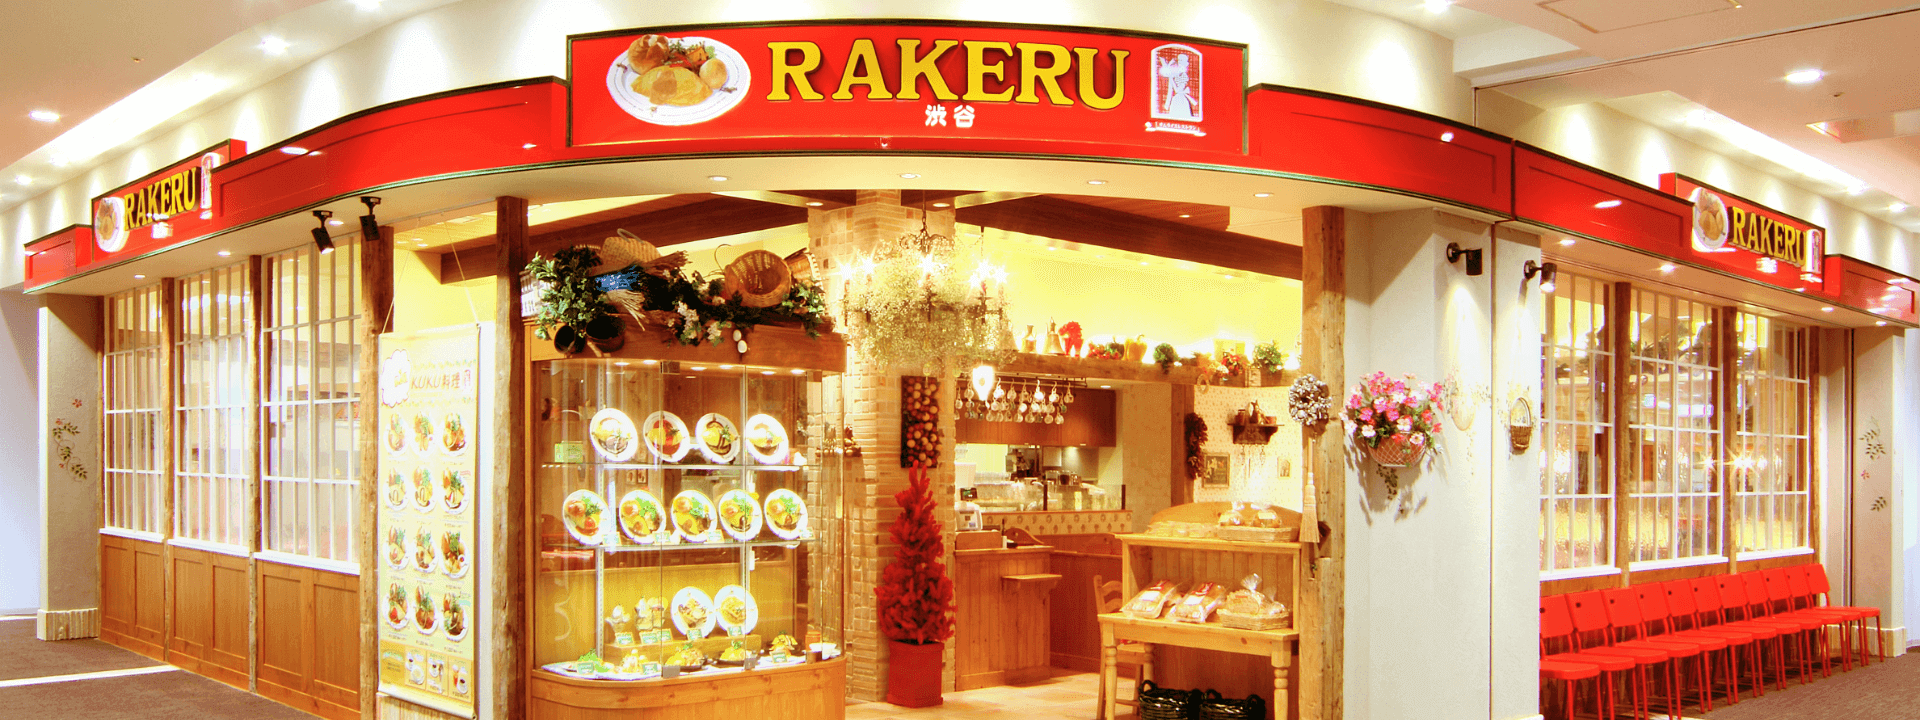 ラケル公式サイト。1963年創業のオムライス・オムレツ専門店。卵料理と合うふわふわのラケルパンも大人気です。美味しいオムライスはこちらです！